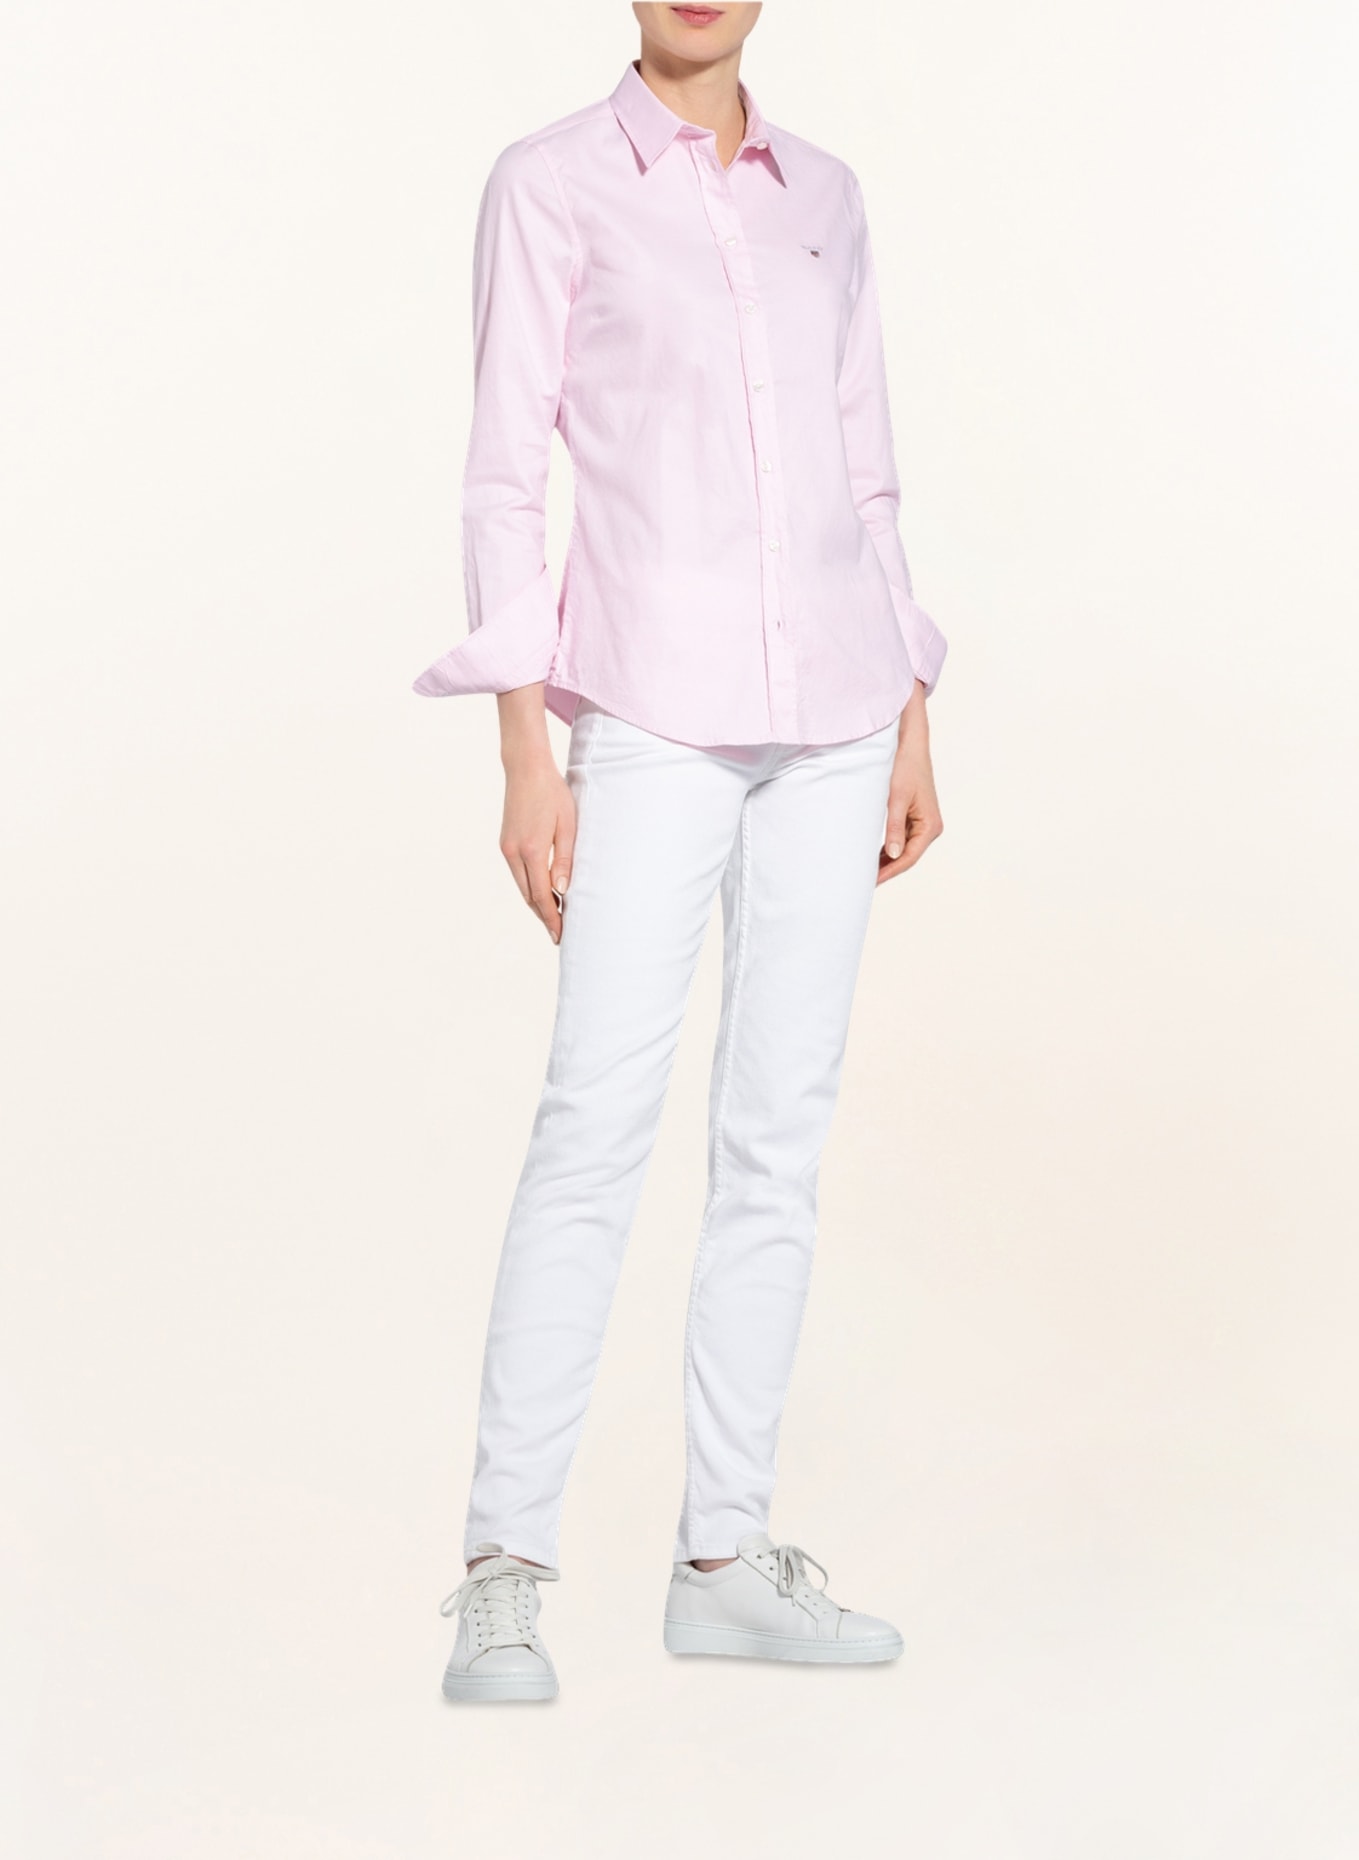 GANT Shirt blouse, Color: LIGHT PINK (Image 2)